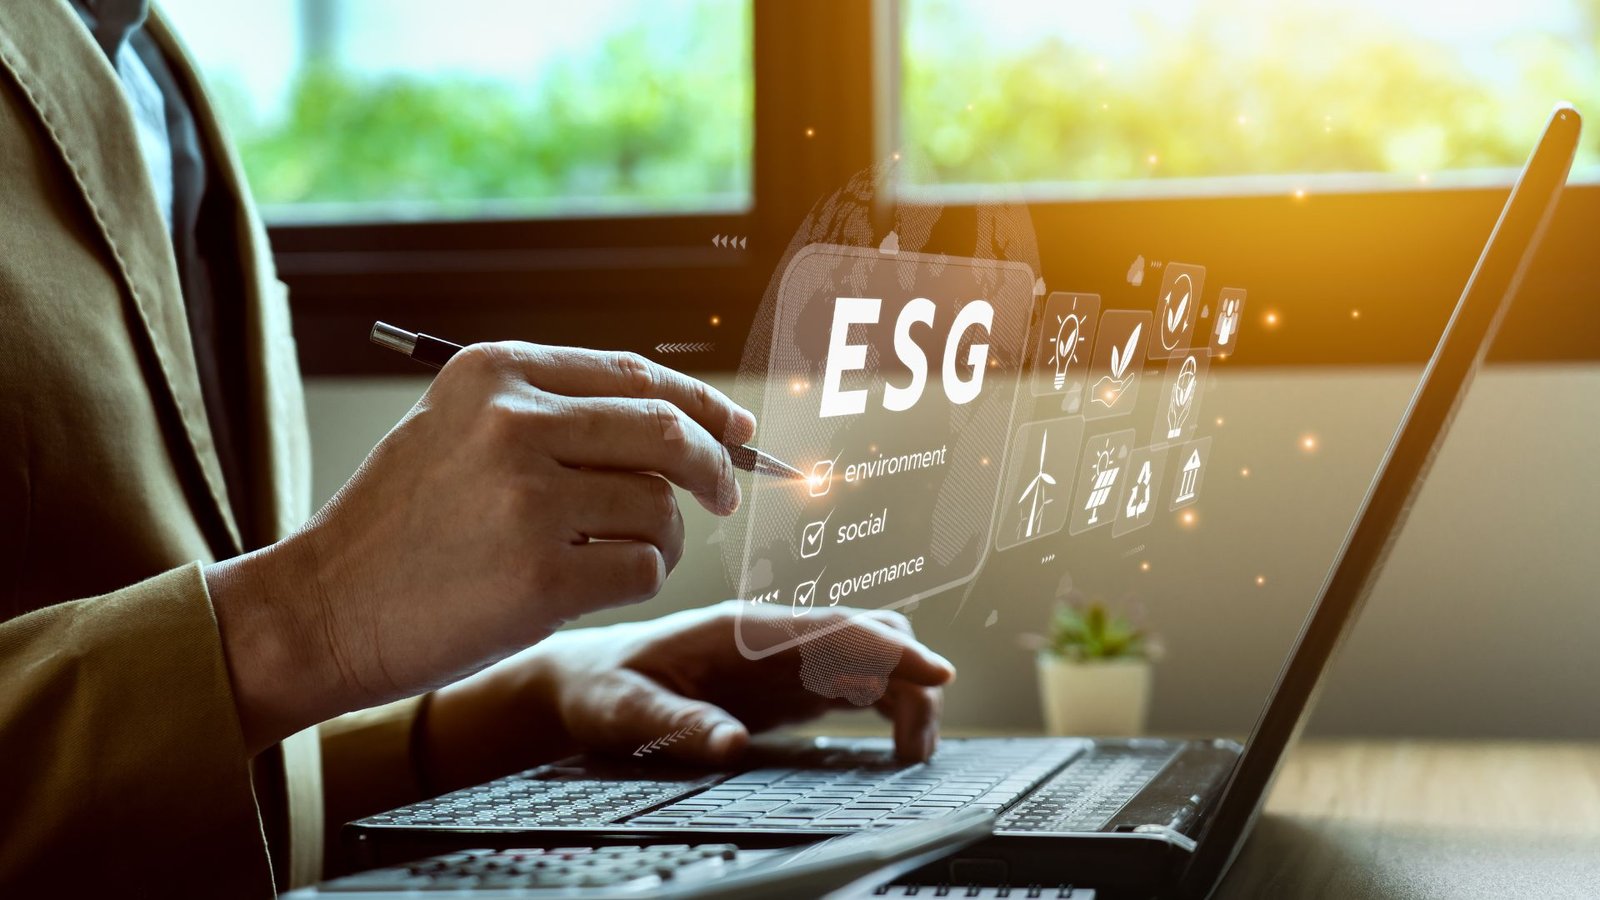 Advogados ajudam a implantar ESG em médias empresas – passo a passo operacional, tático e estratégico